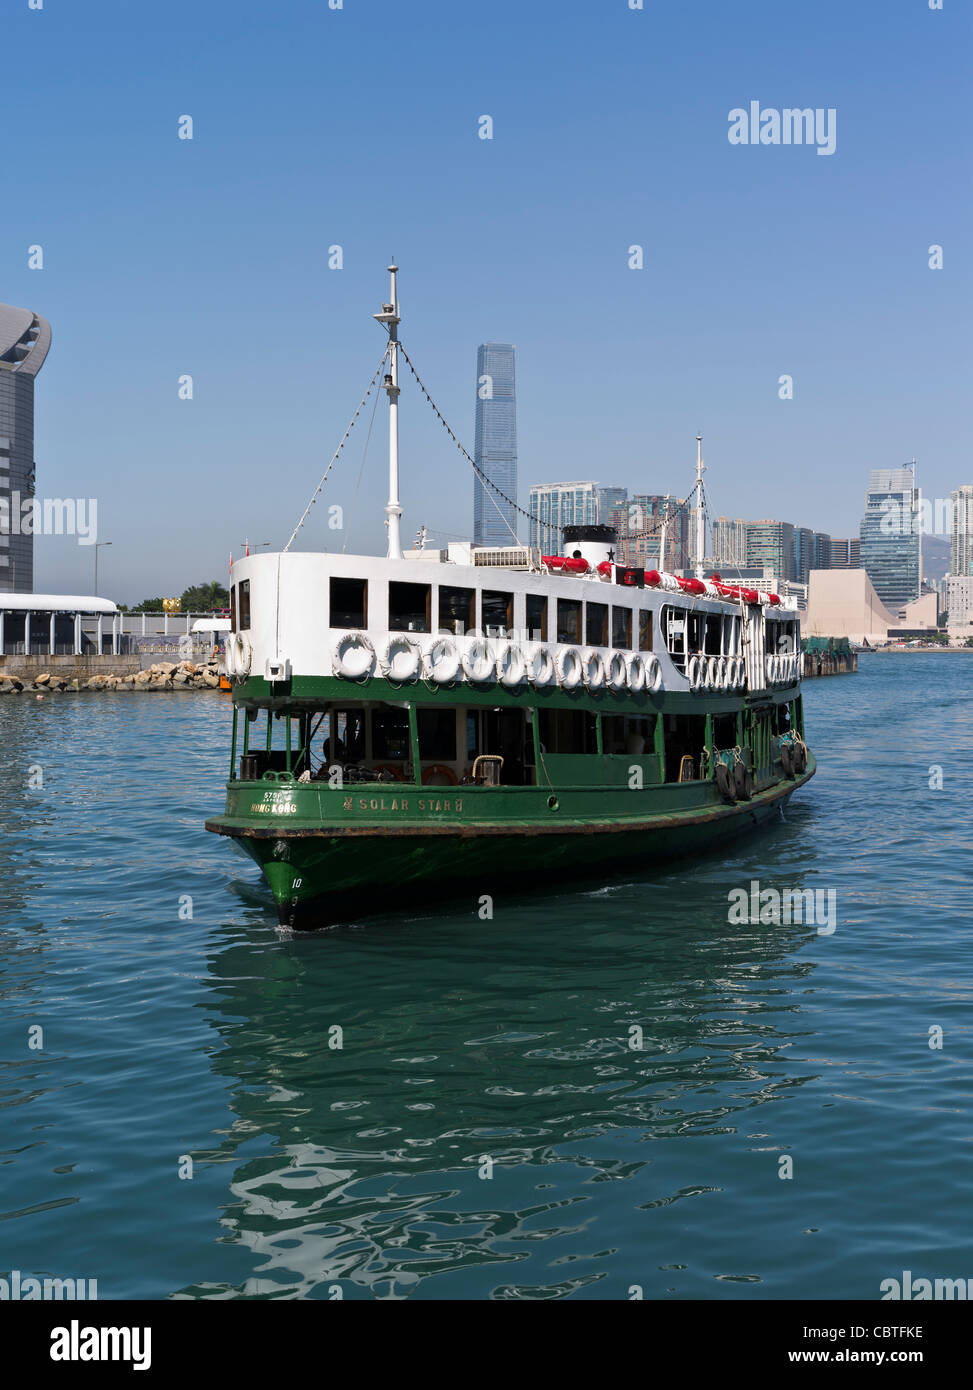 dh Solar Star green ferry WAN CHAI HONG KONG Passenger ferries transportation public transport Stock Photo